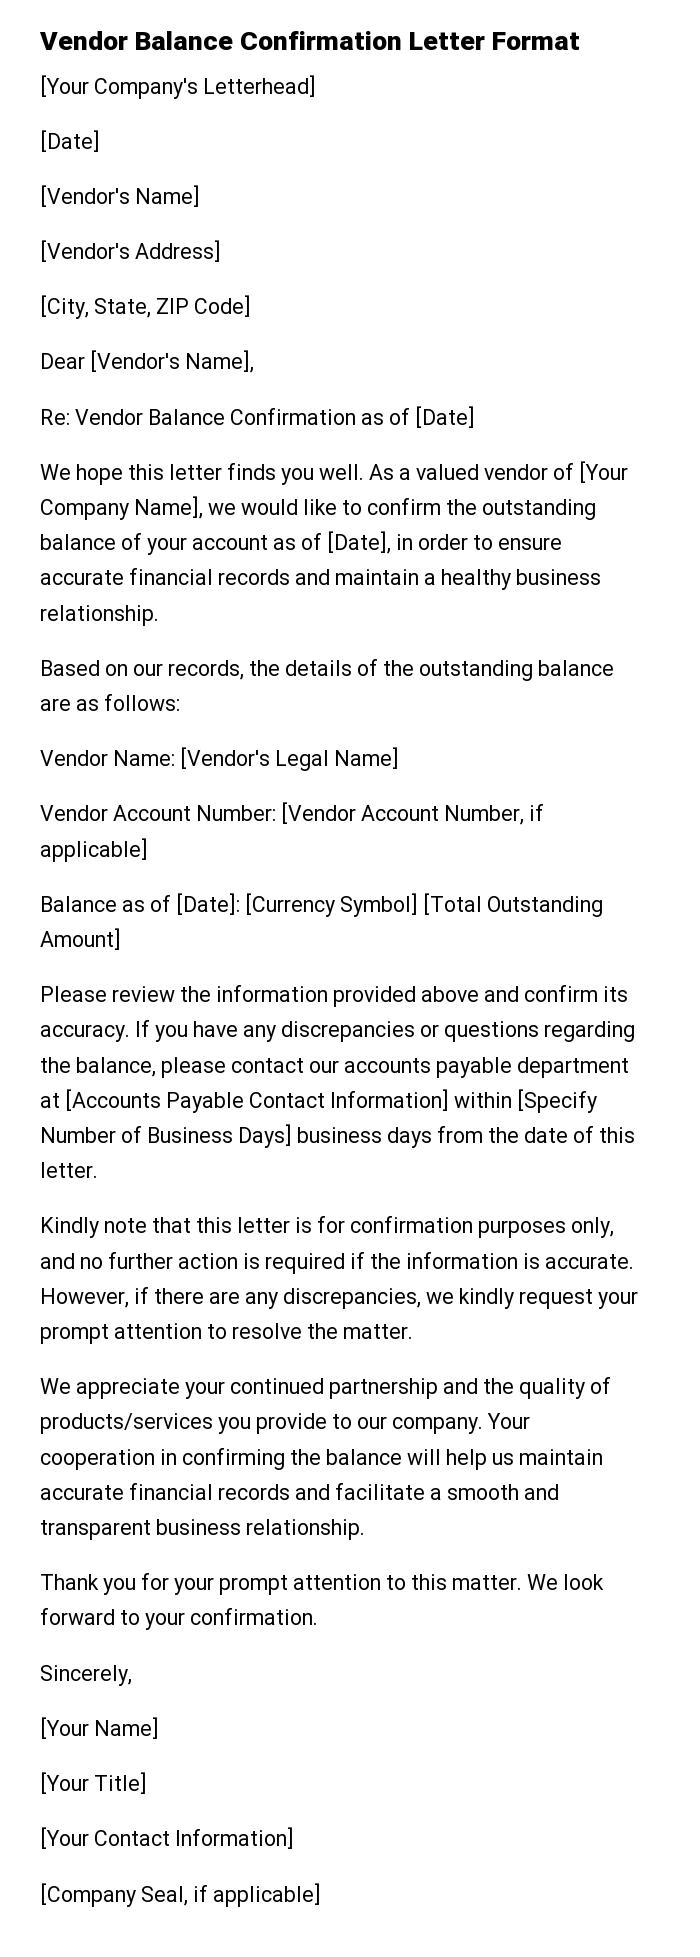 Vendor Balance Confirmation Letter Format